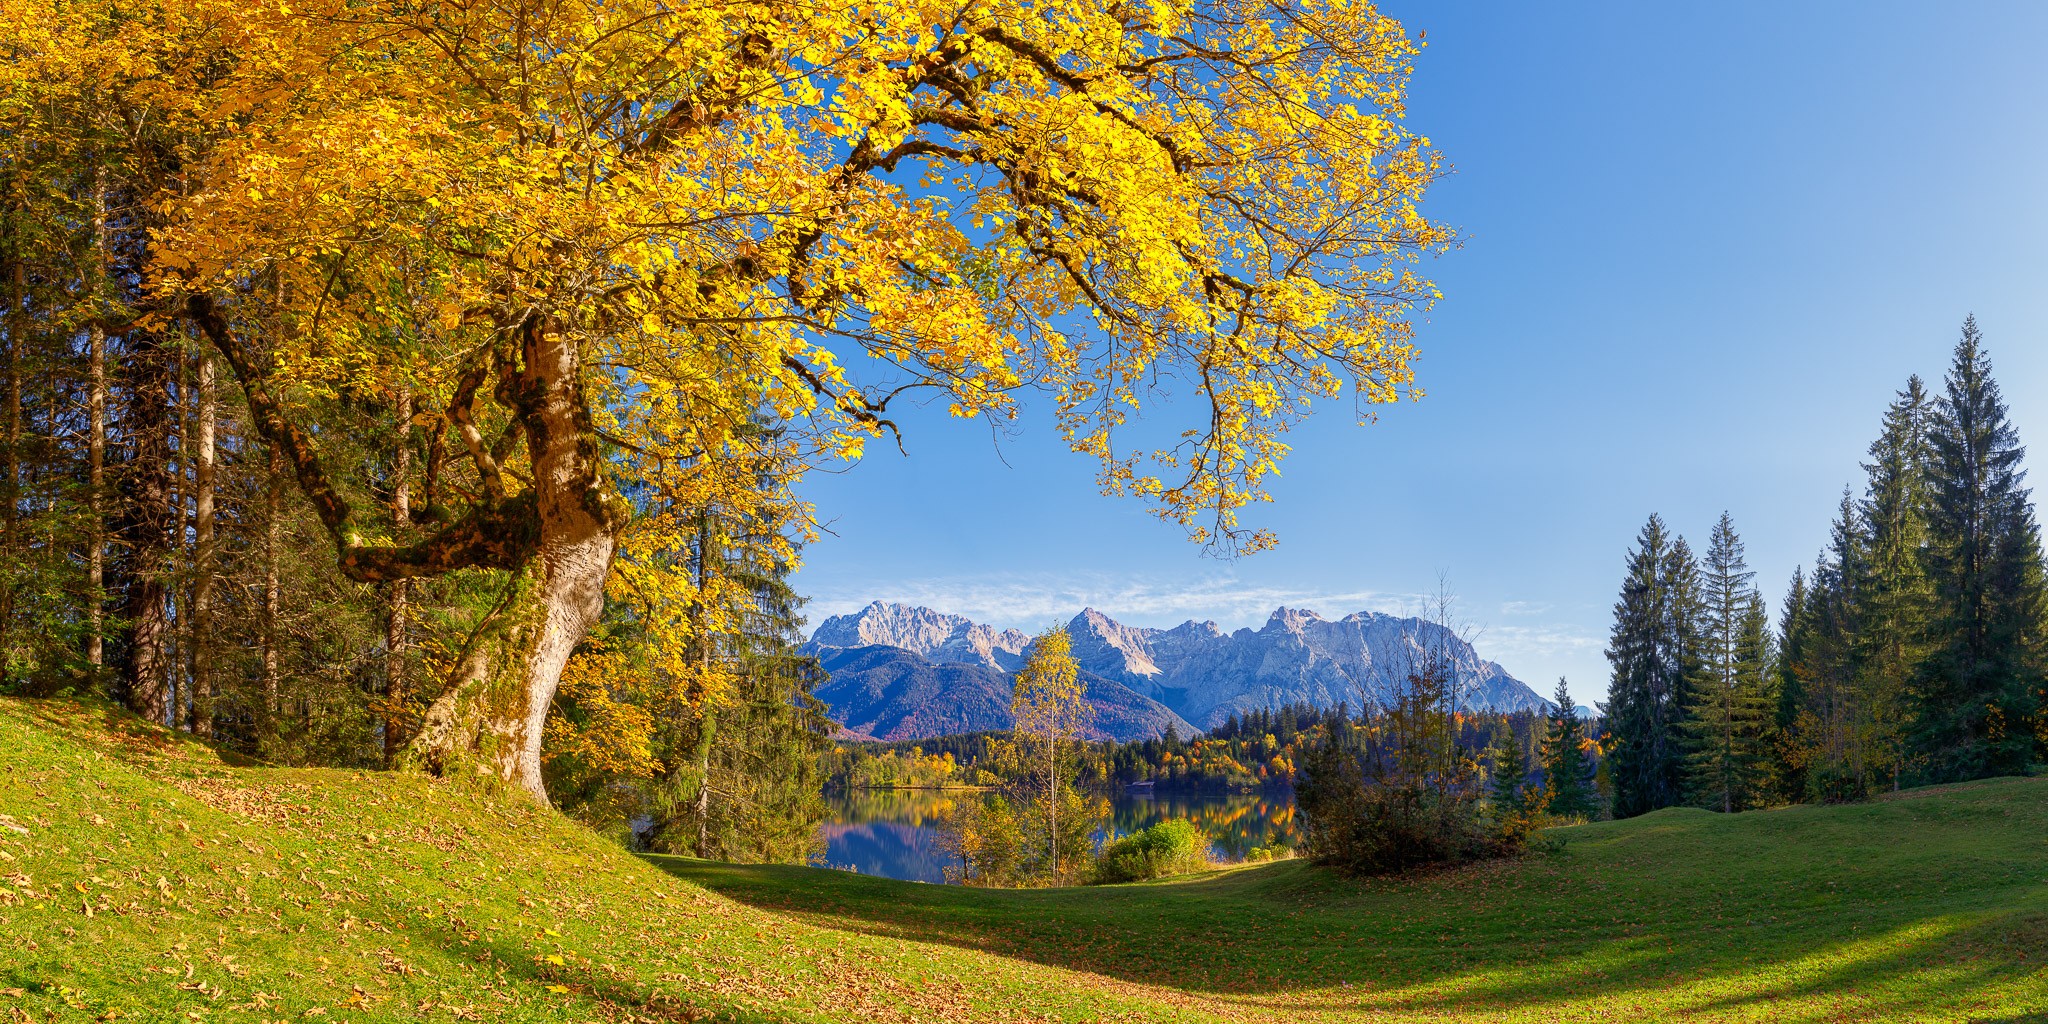 Das Ahornlaub leuchtet goldgelb - Herbstzeit! Barmsee mit Blick auf das Karwendelgebirge.